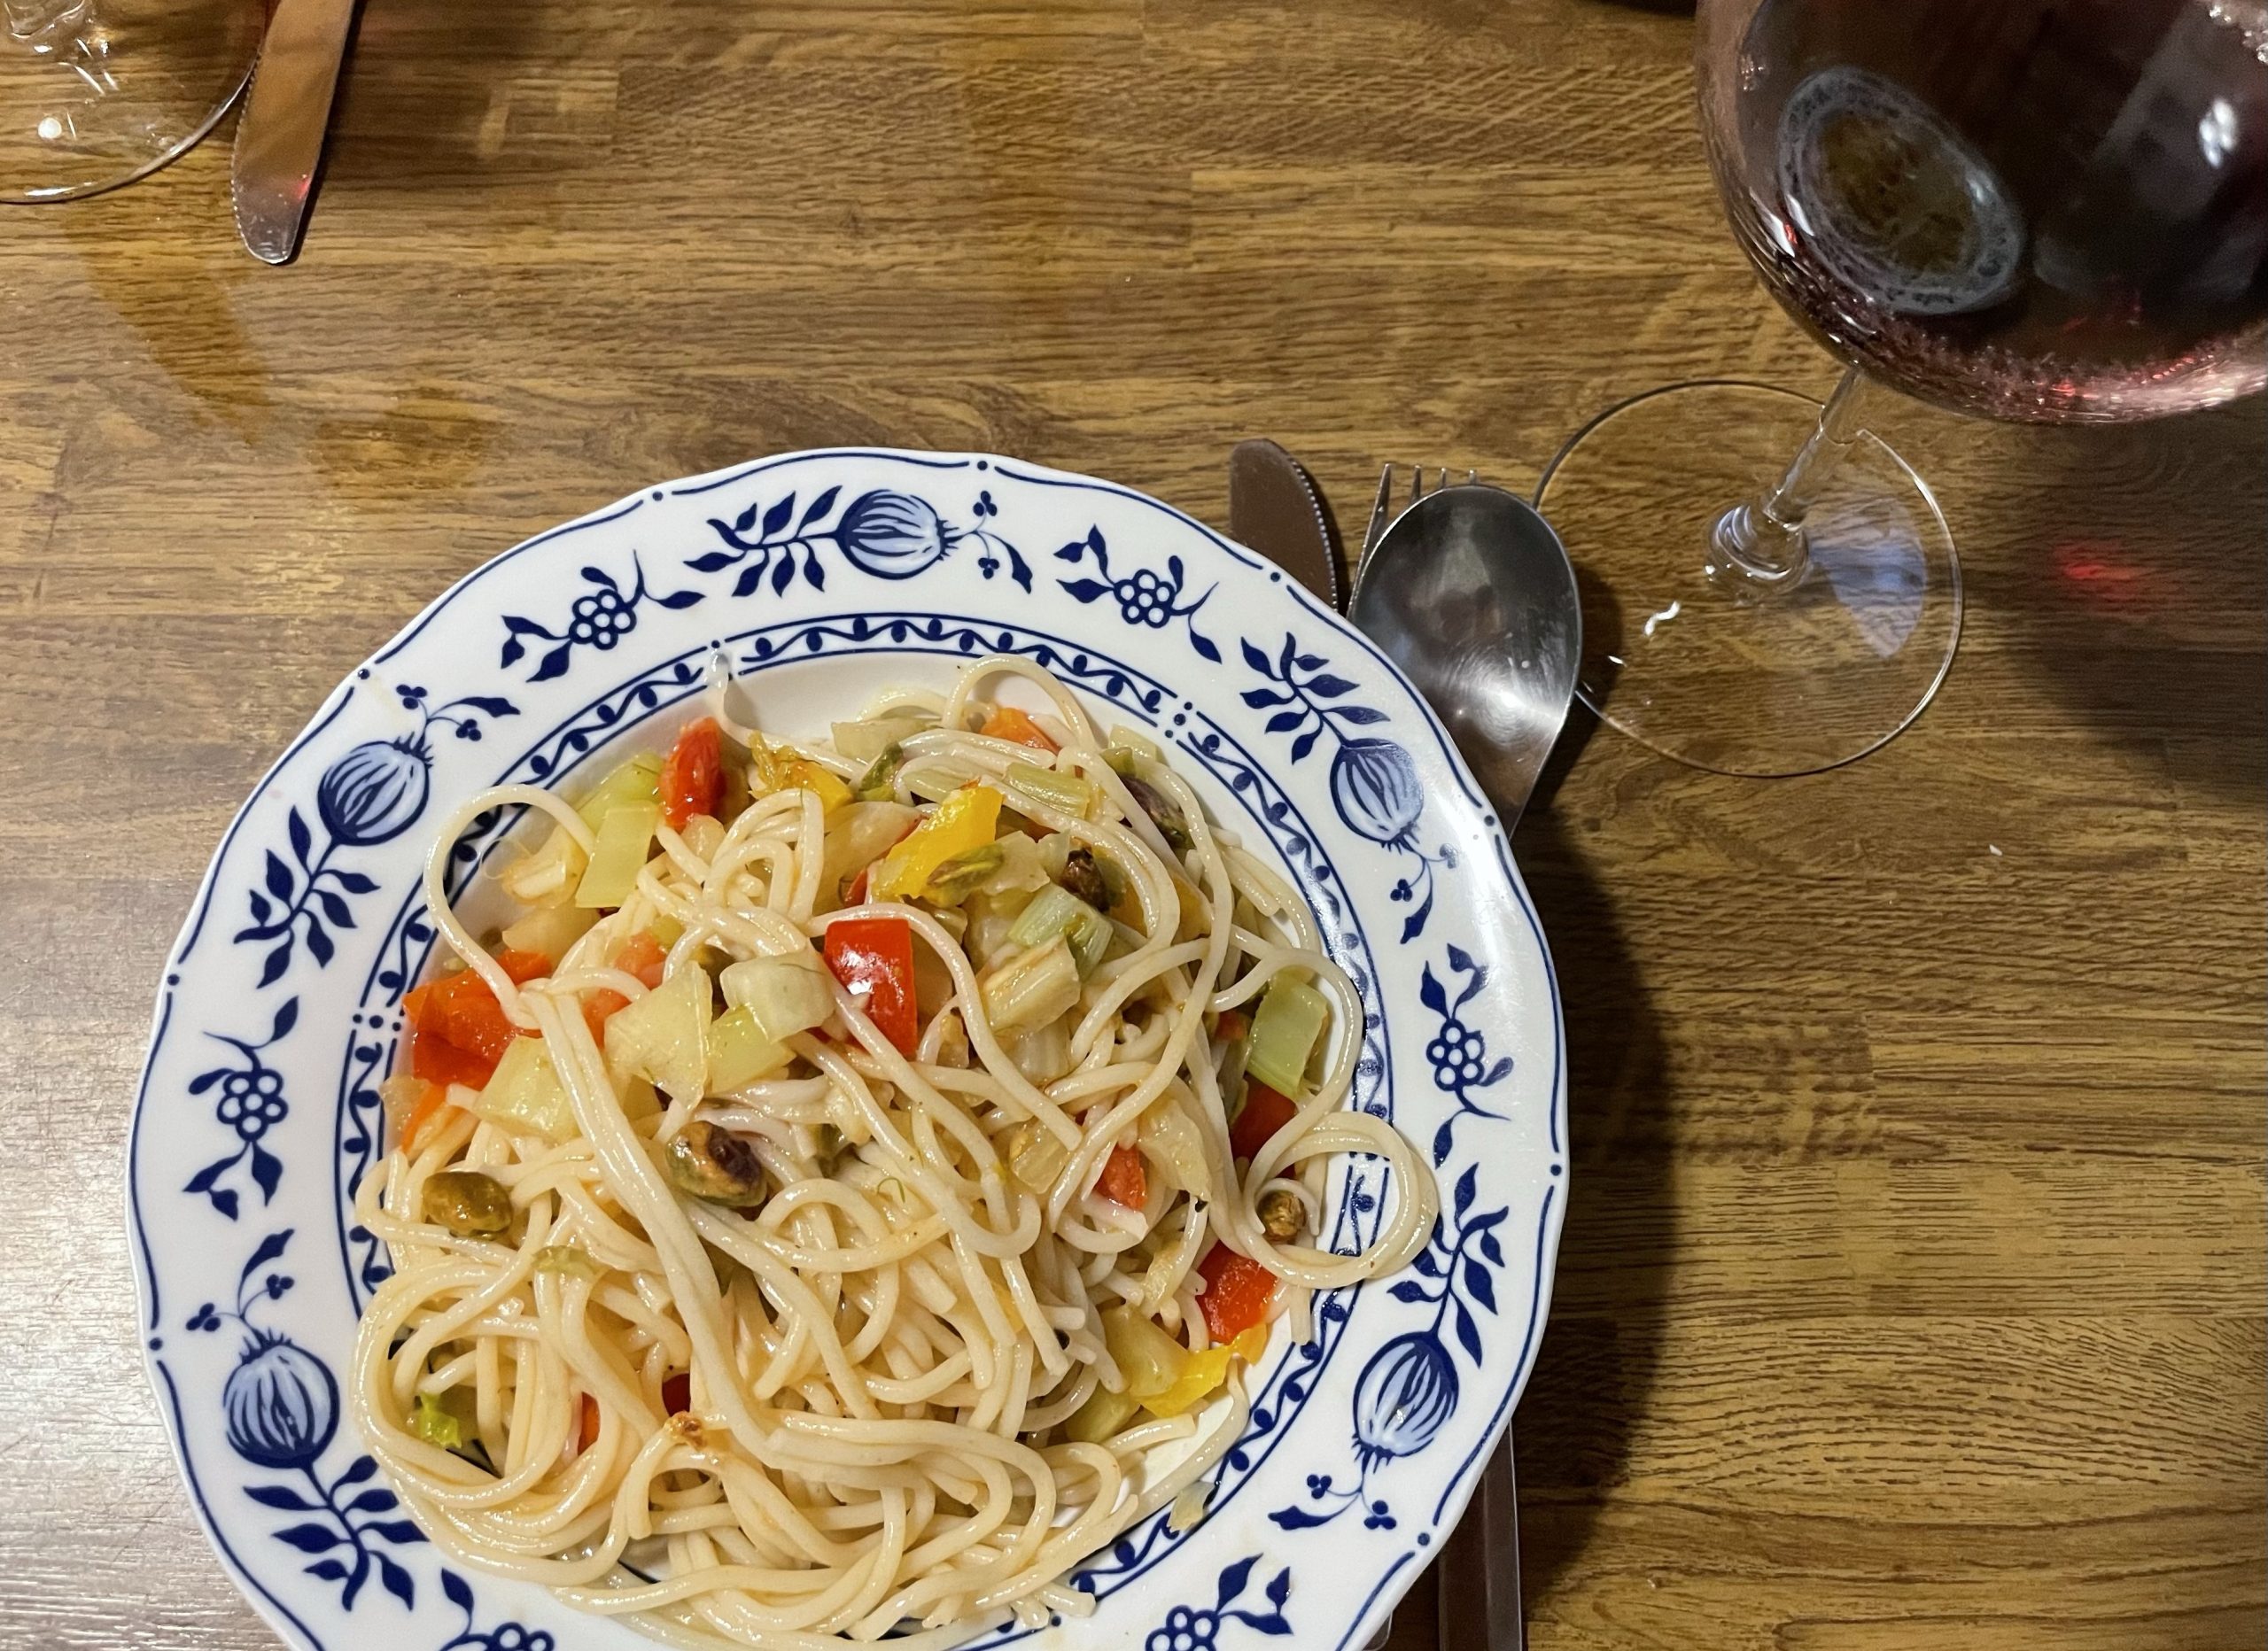 Fenchelspaghetti mit Tomaten, Paprika und Nüssen an einem Glas Mezzocarona Merkot Rotwein